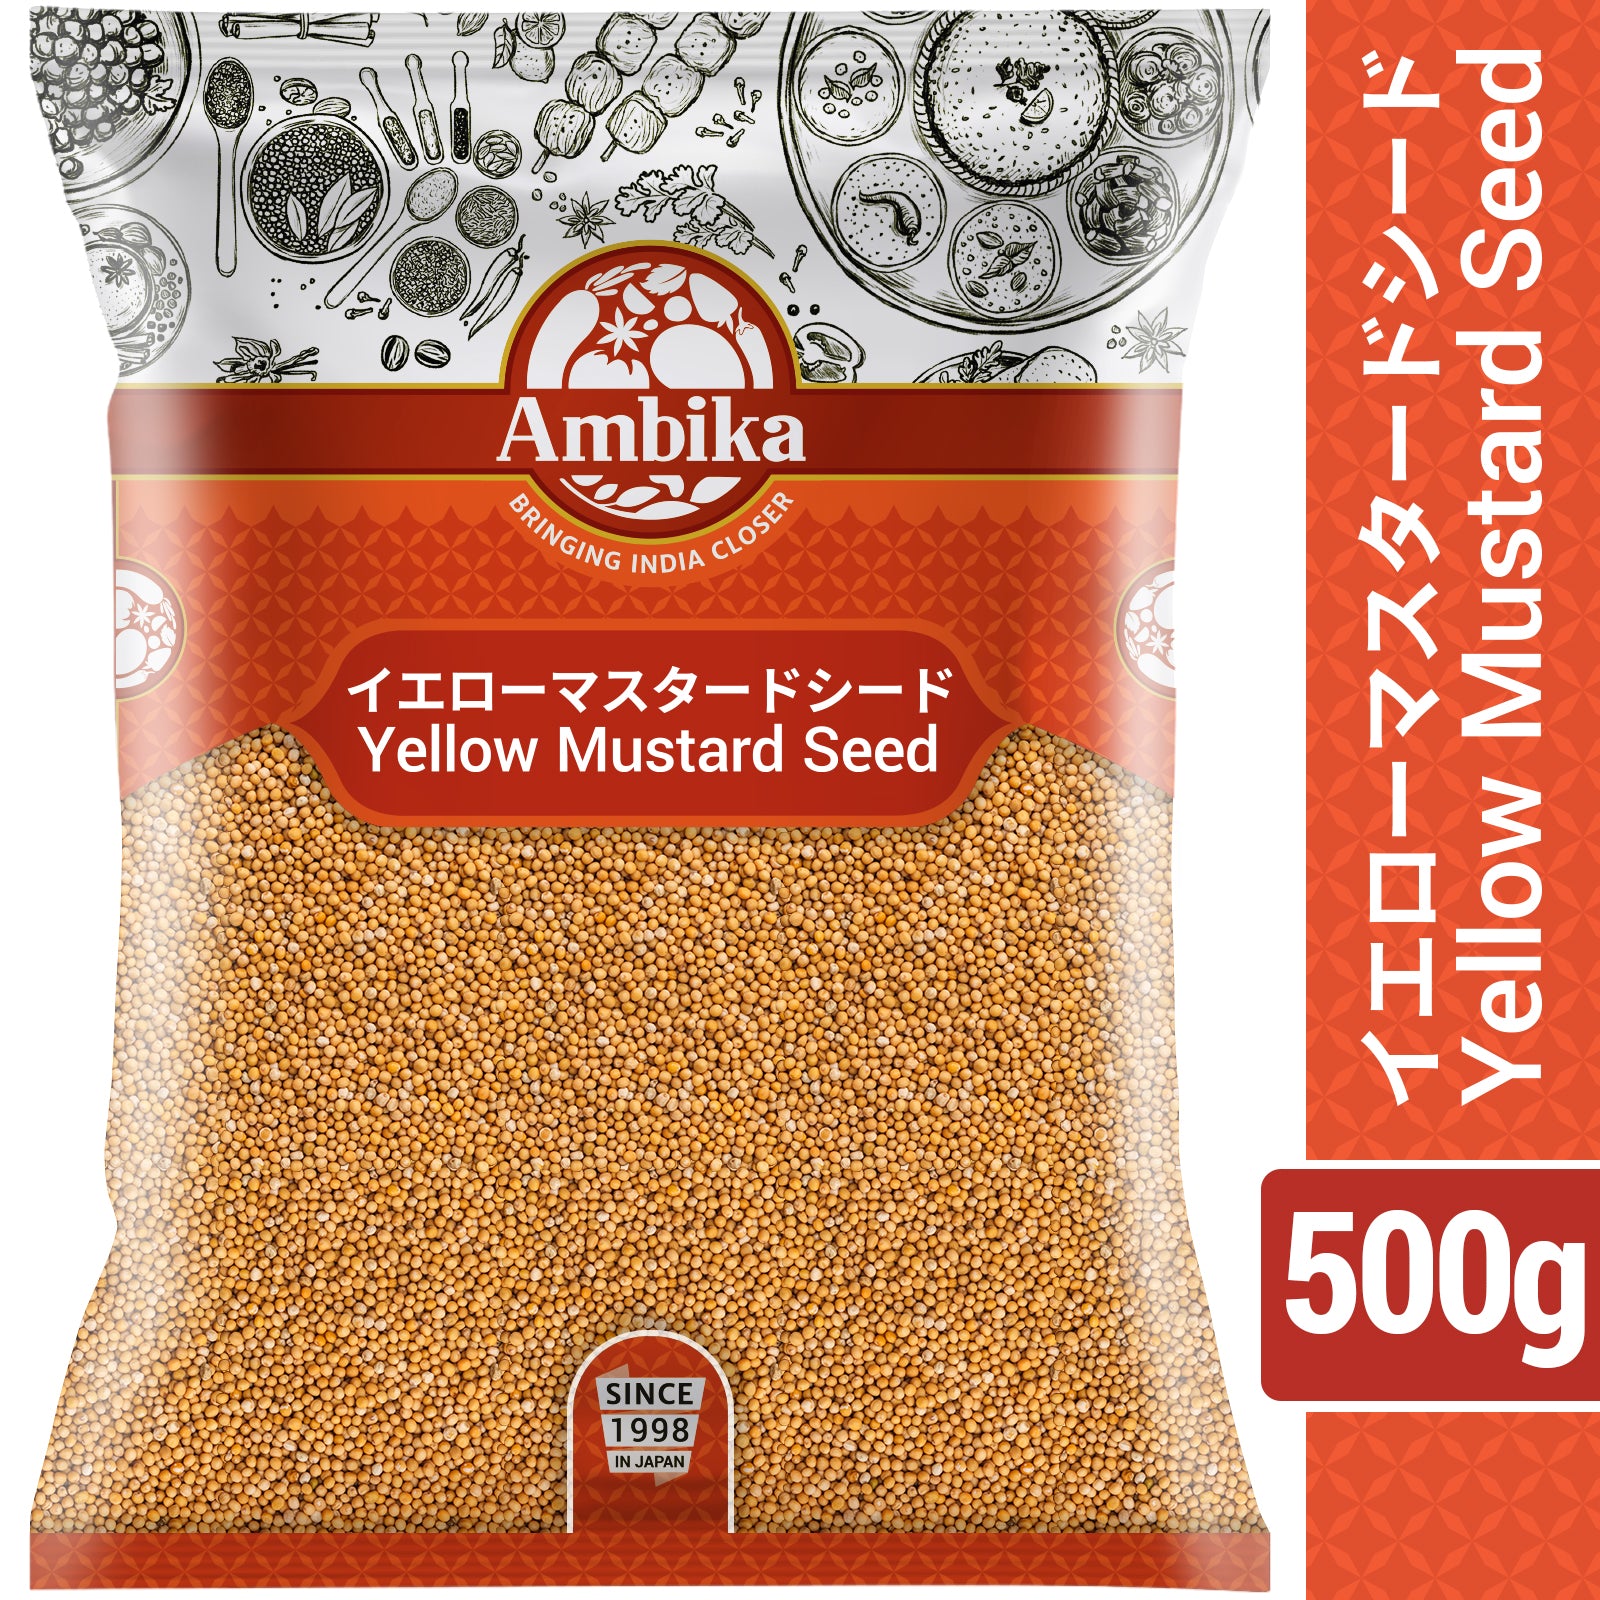 (Ambika) Yellow Mustard Seed 500g